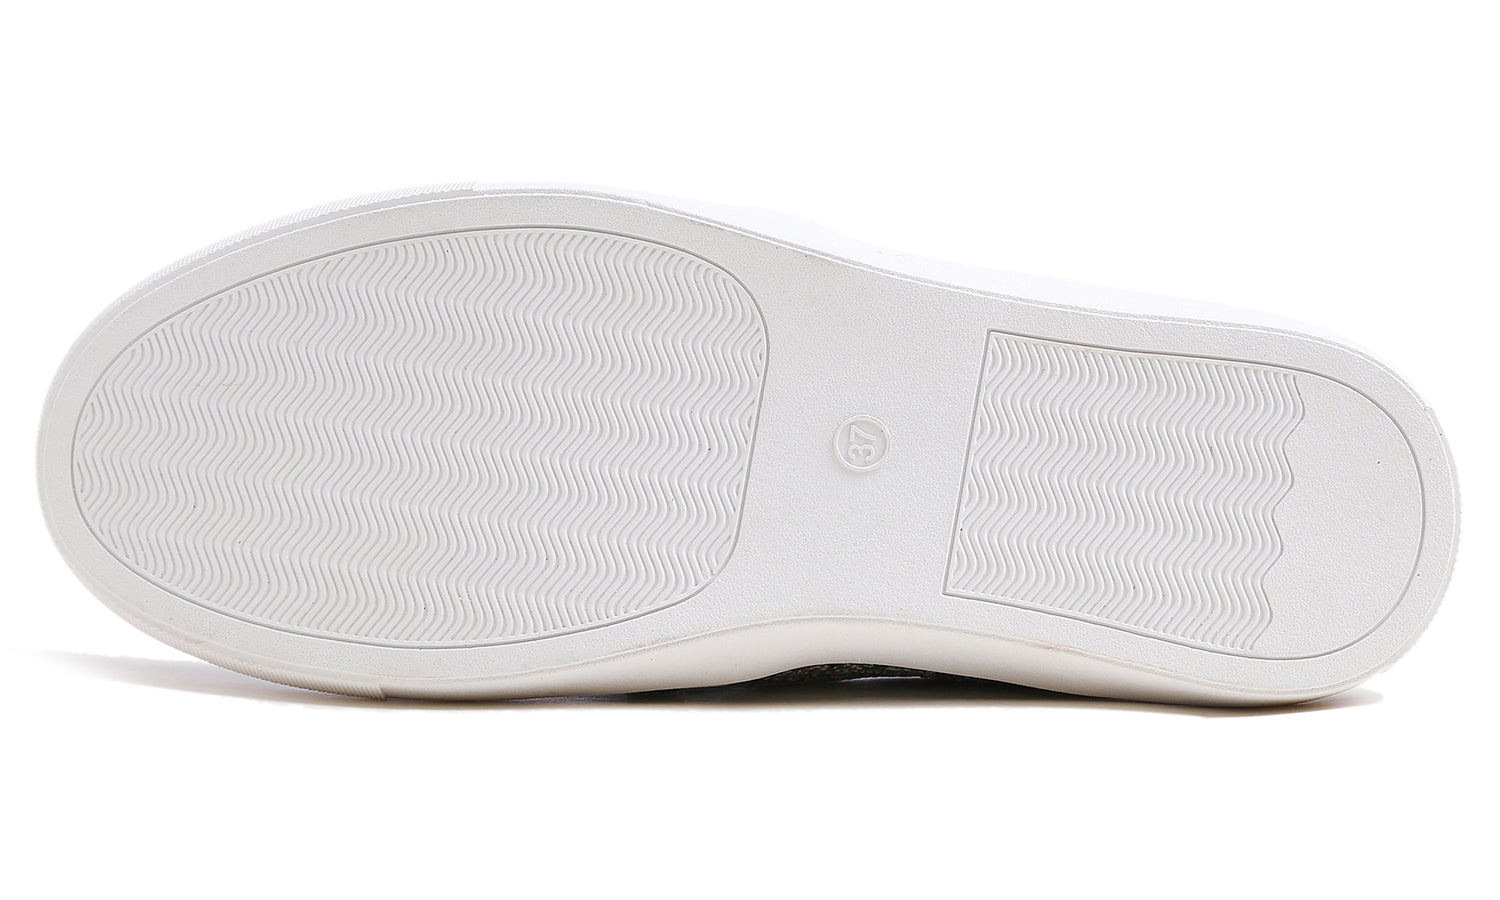 Feversole Women's Glitter Multi Silver Slip On Sneaker Casual Flat Loafers